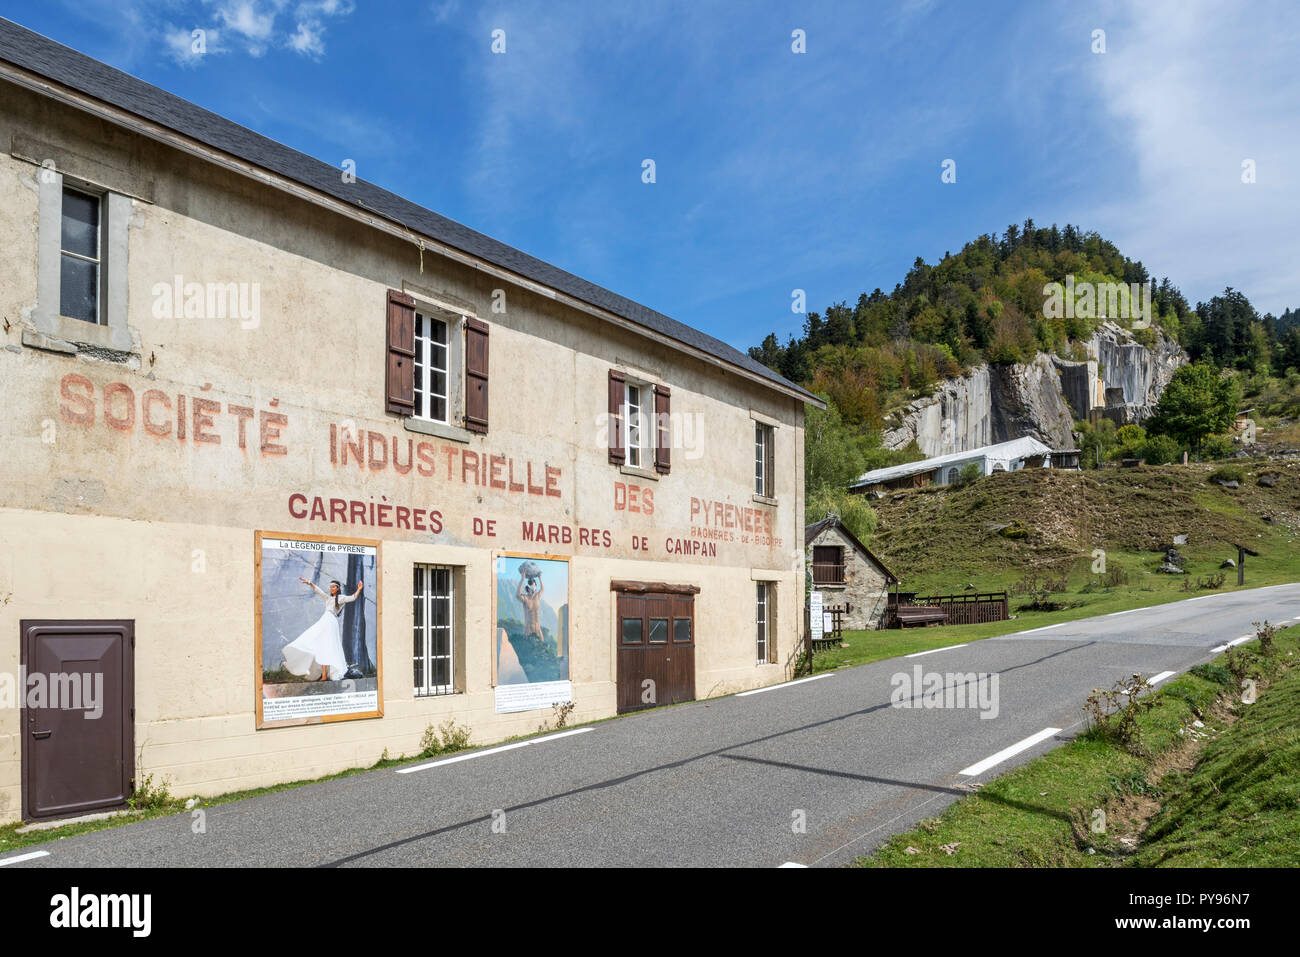 Société Industrielle des Pyrénées / Carrières de Marbres de Campan, marble quarry at Payolle, Haute-Bigorre, Hautes-Pyrénées, France Stock Photo